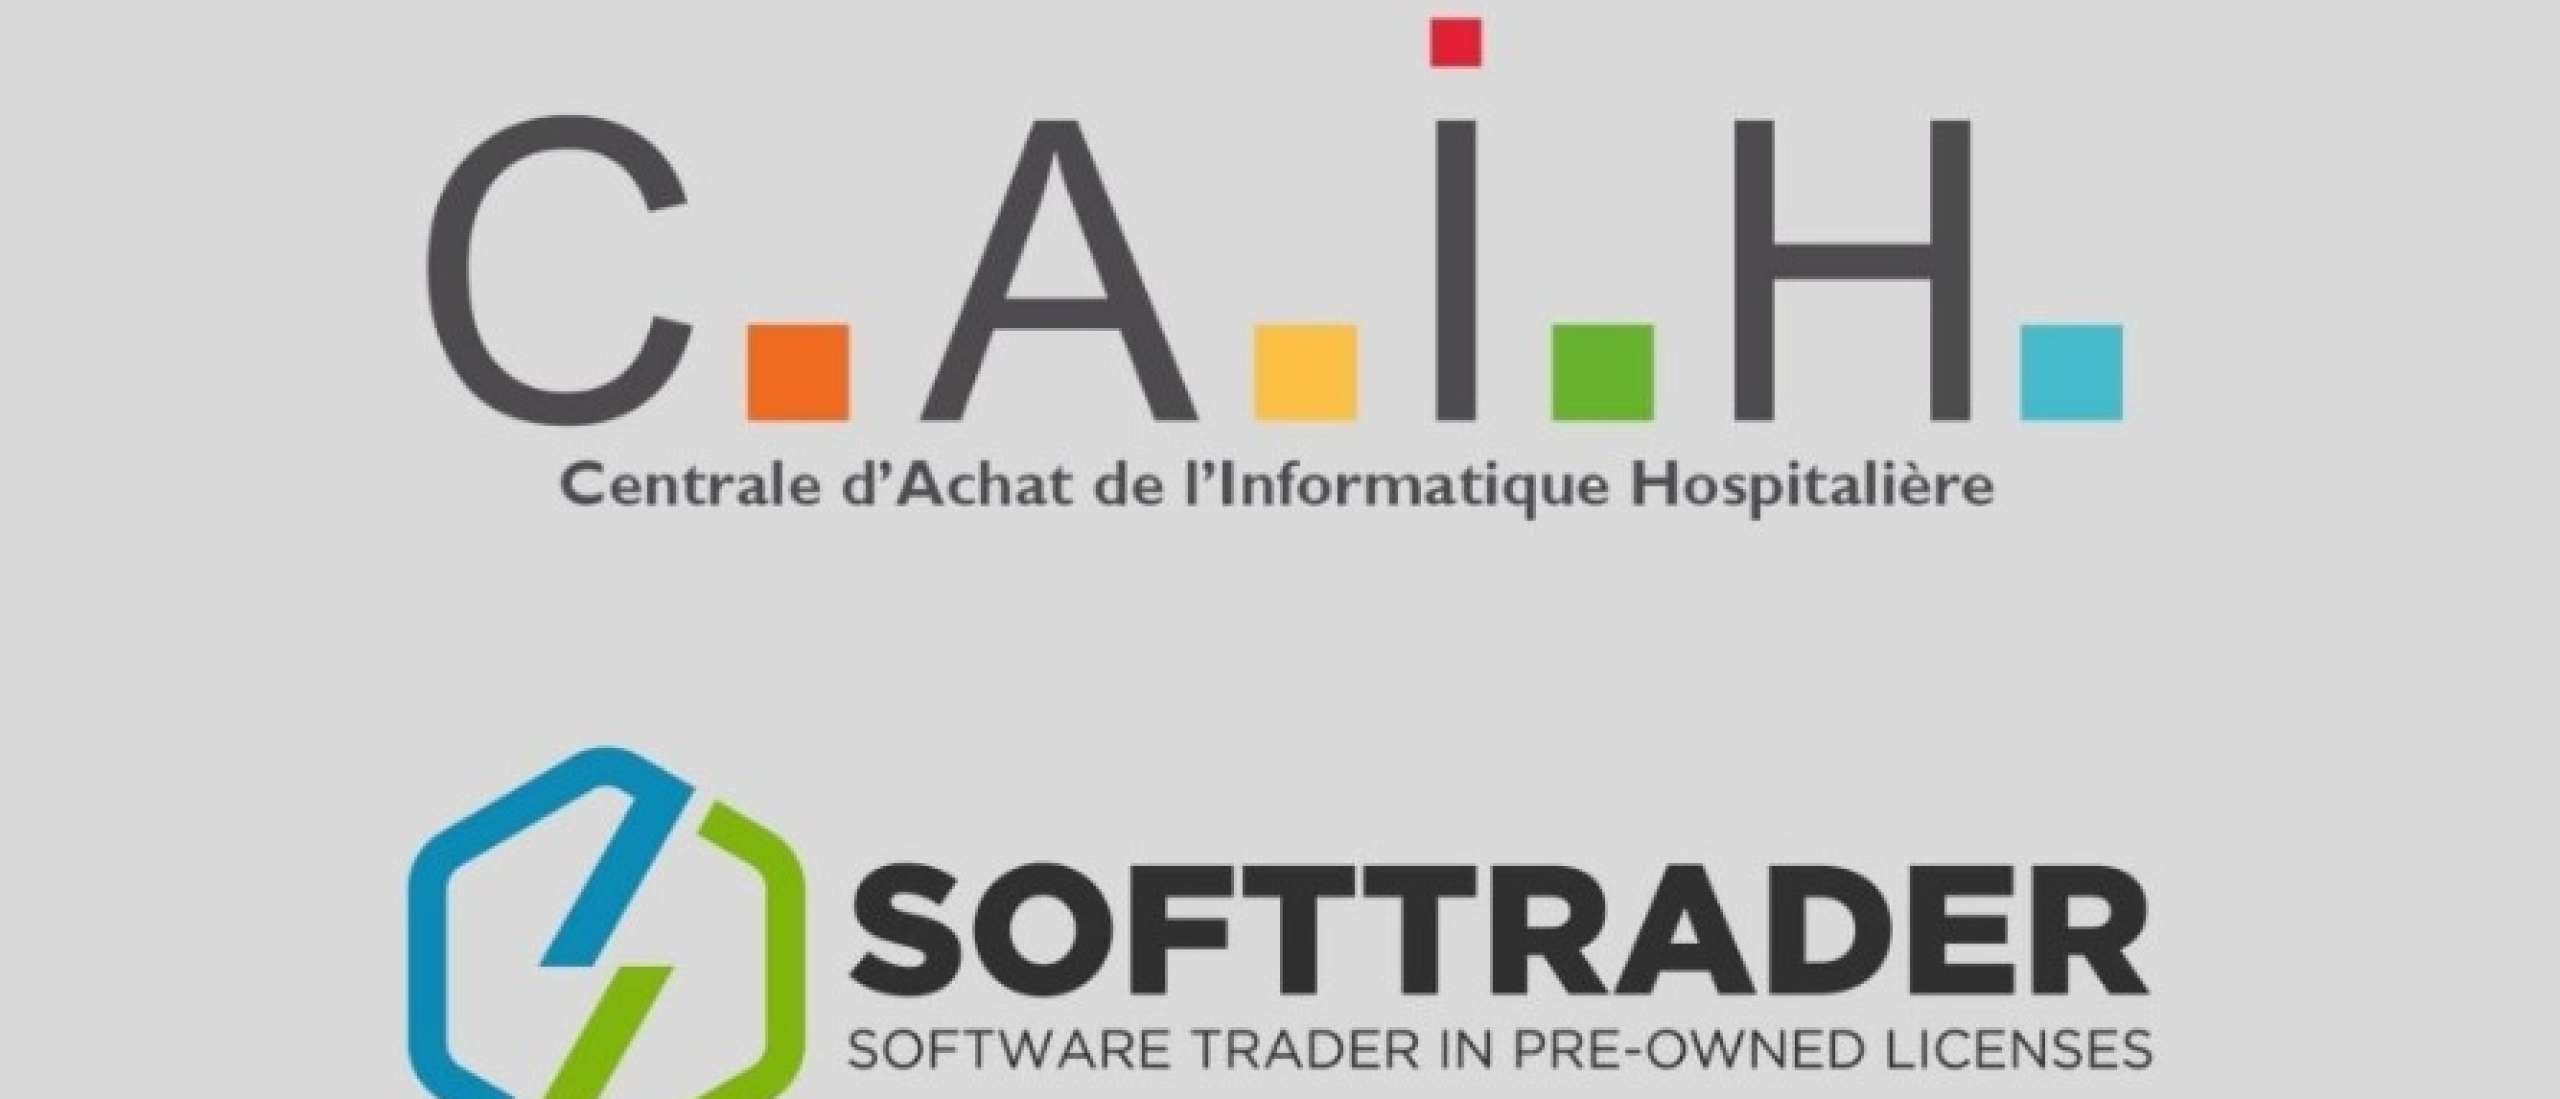 Softtrader gana licitación C.A.I.H. (Central de Compras de la Informática Hospitalaria)